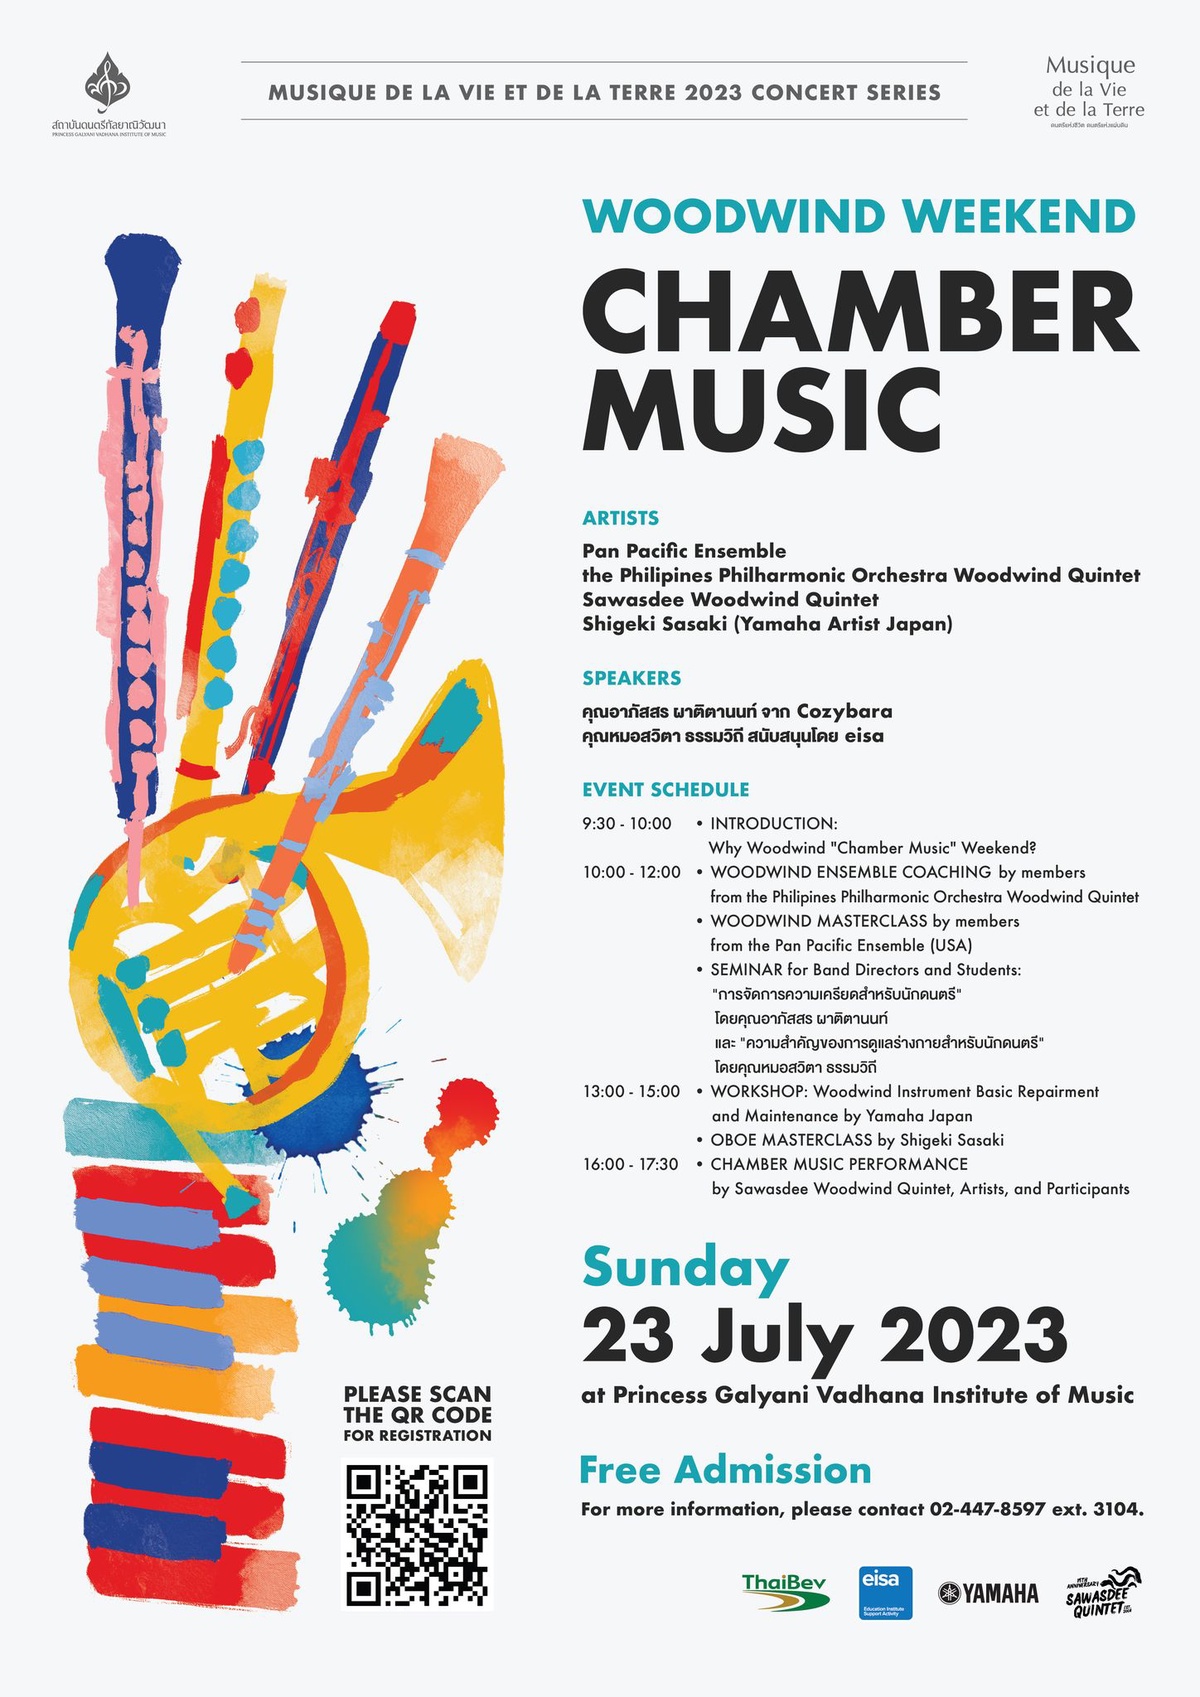 สถาบันดนตรีกัลยาณิวัฒนา จัดกิจกรรม Woodwind Chamber Music Weekend สมัครเข้าร่วมงาน.ฟรี